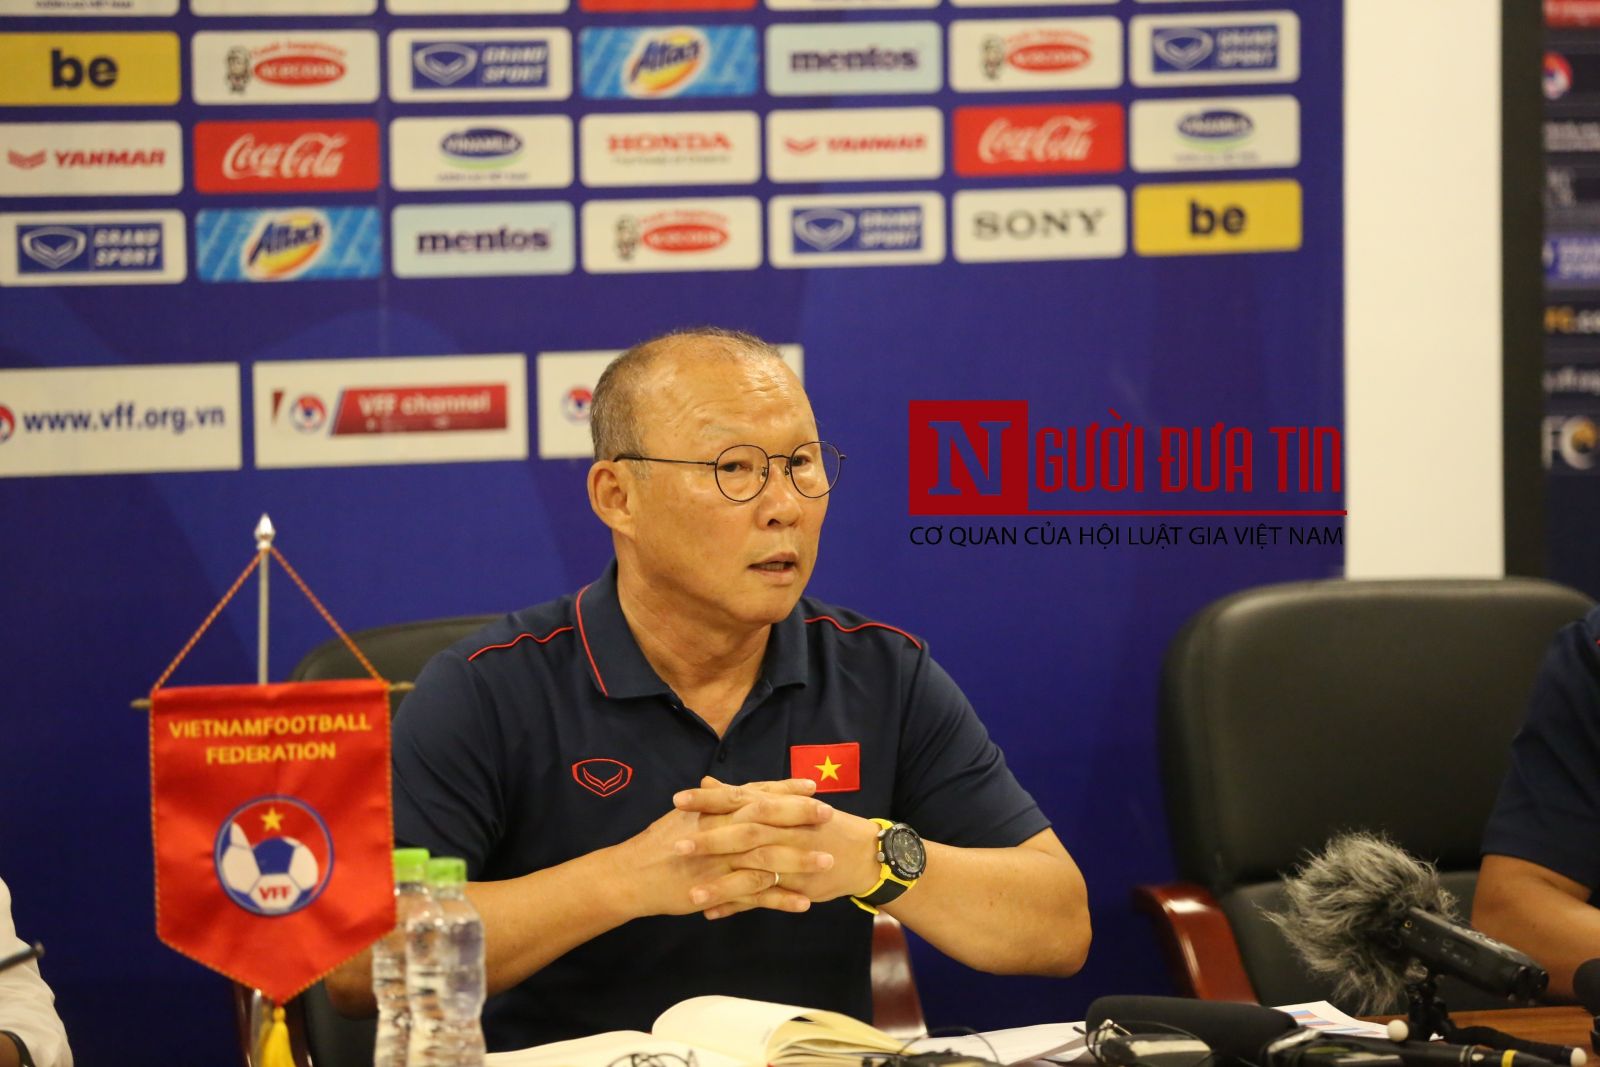 HLV Park Hang-seo: 'So với AFF Cup, hàng tấn công của Malaysia sắc bén hơn rất nhiều'